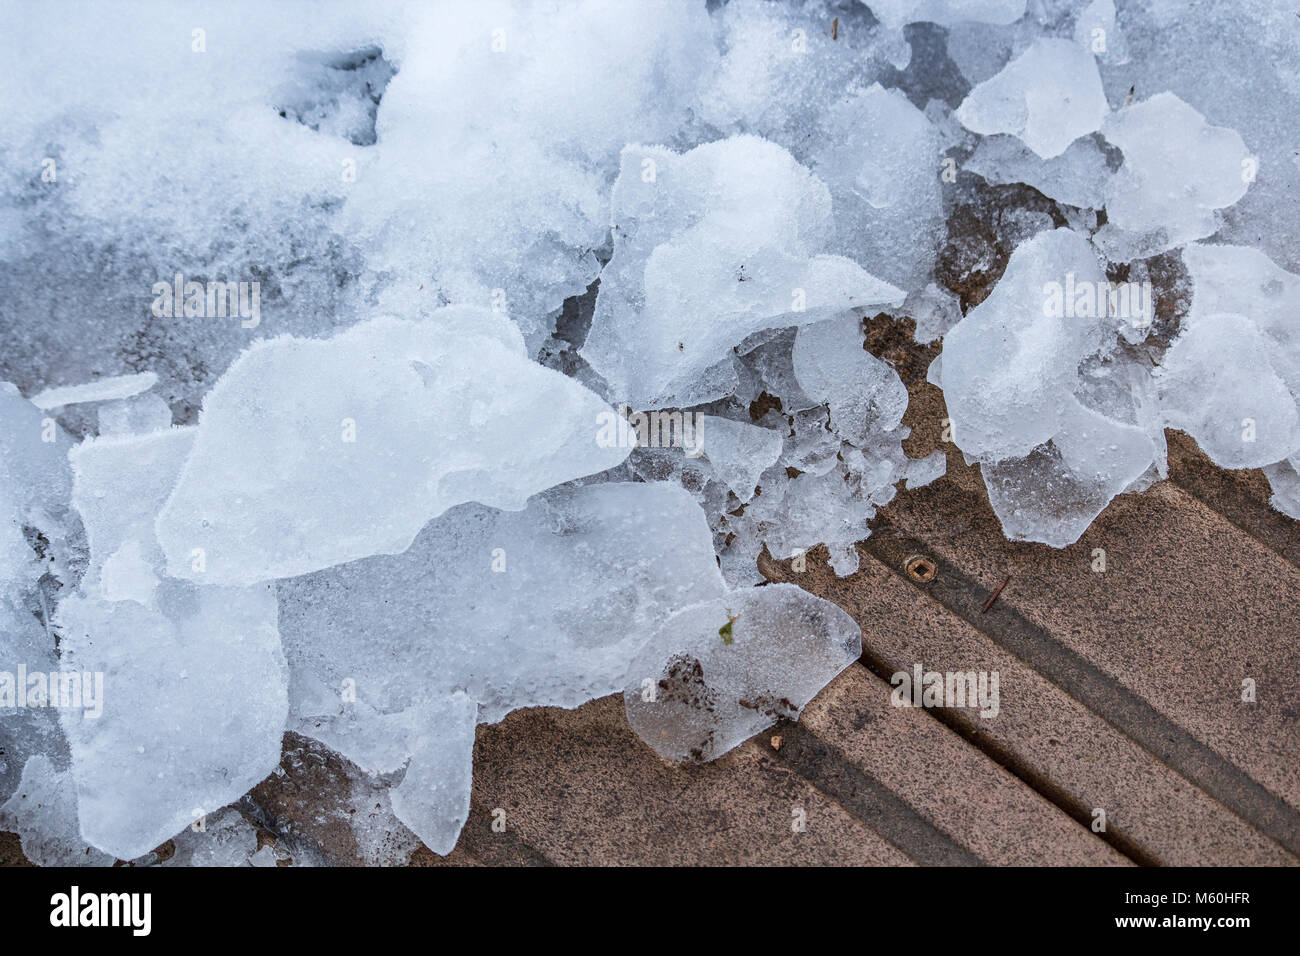 Ein semi-abstrakte Sicht der kontrastierenden Farben und Texturen der eisigen Brocken der Schnee neben einem gelöscht Teil eines hölzernen Deck. Stockfoto